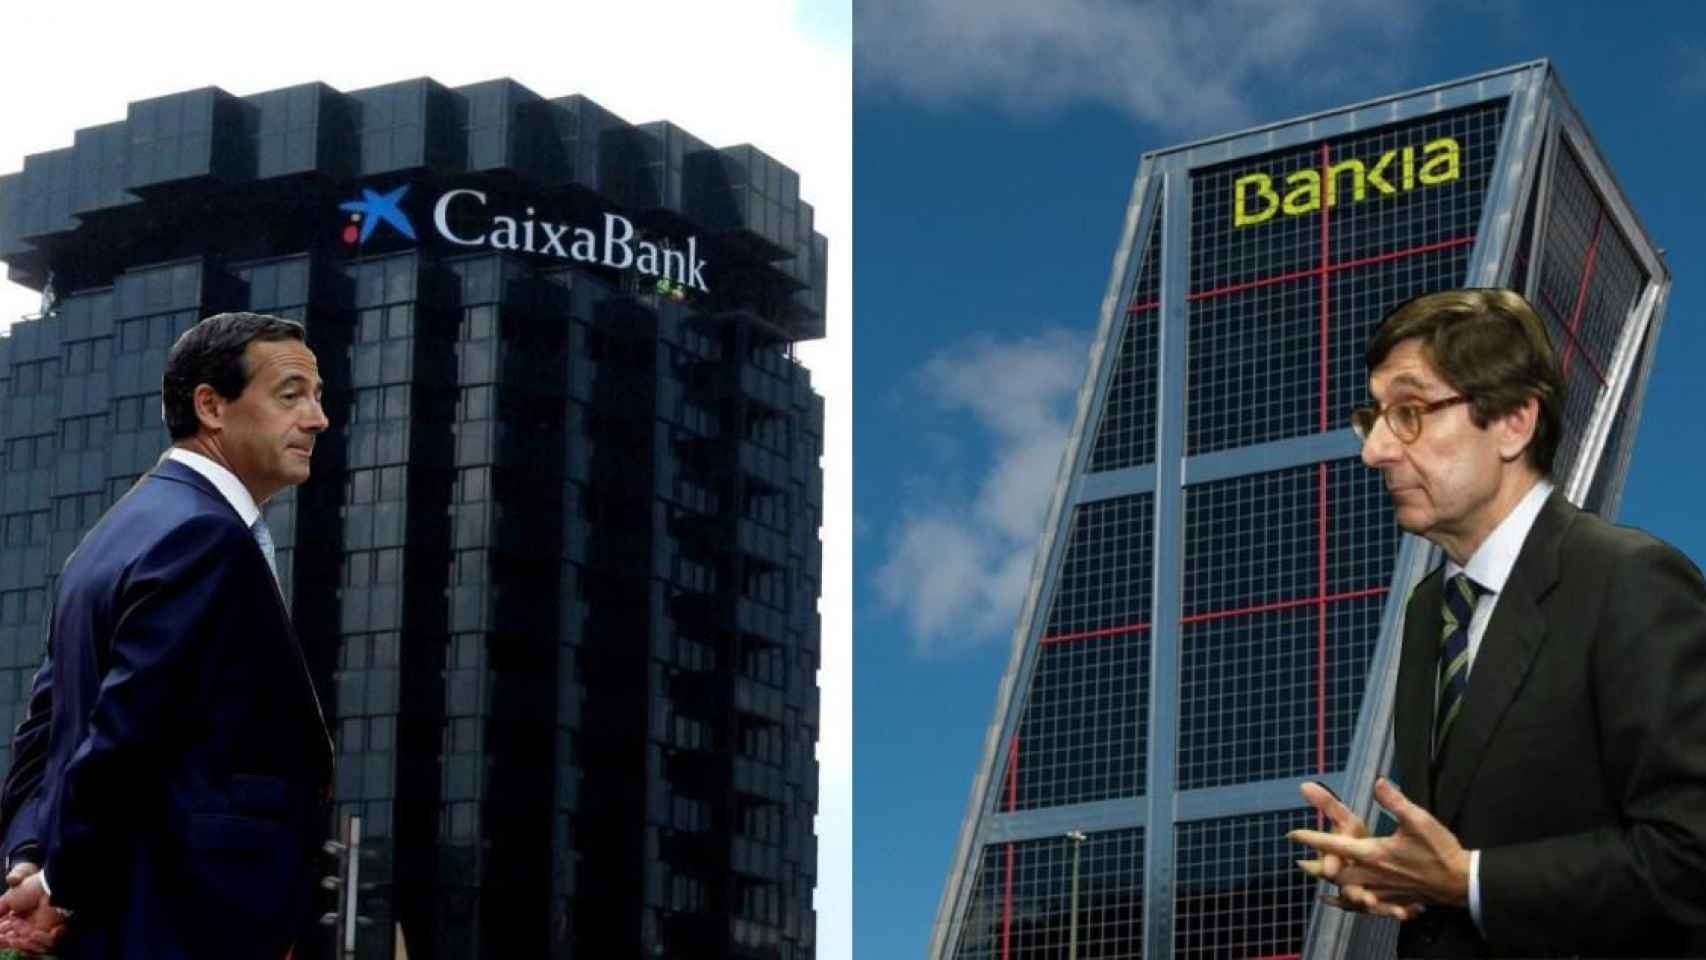 El consejero delegado de Caixabank, Gonzalo Gortázar (i), y el presidente de Bankia, José Ignacio Goirigolzarri (d), junto a las oficinas principales de ambas entidades / FOTOMONTAJE CG